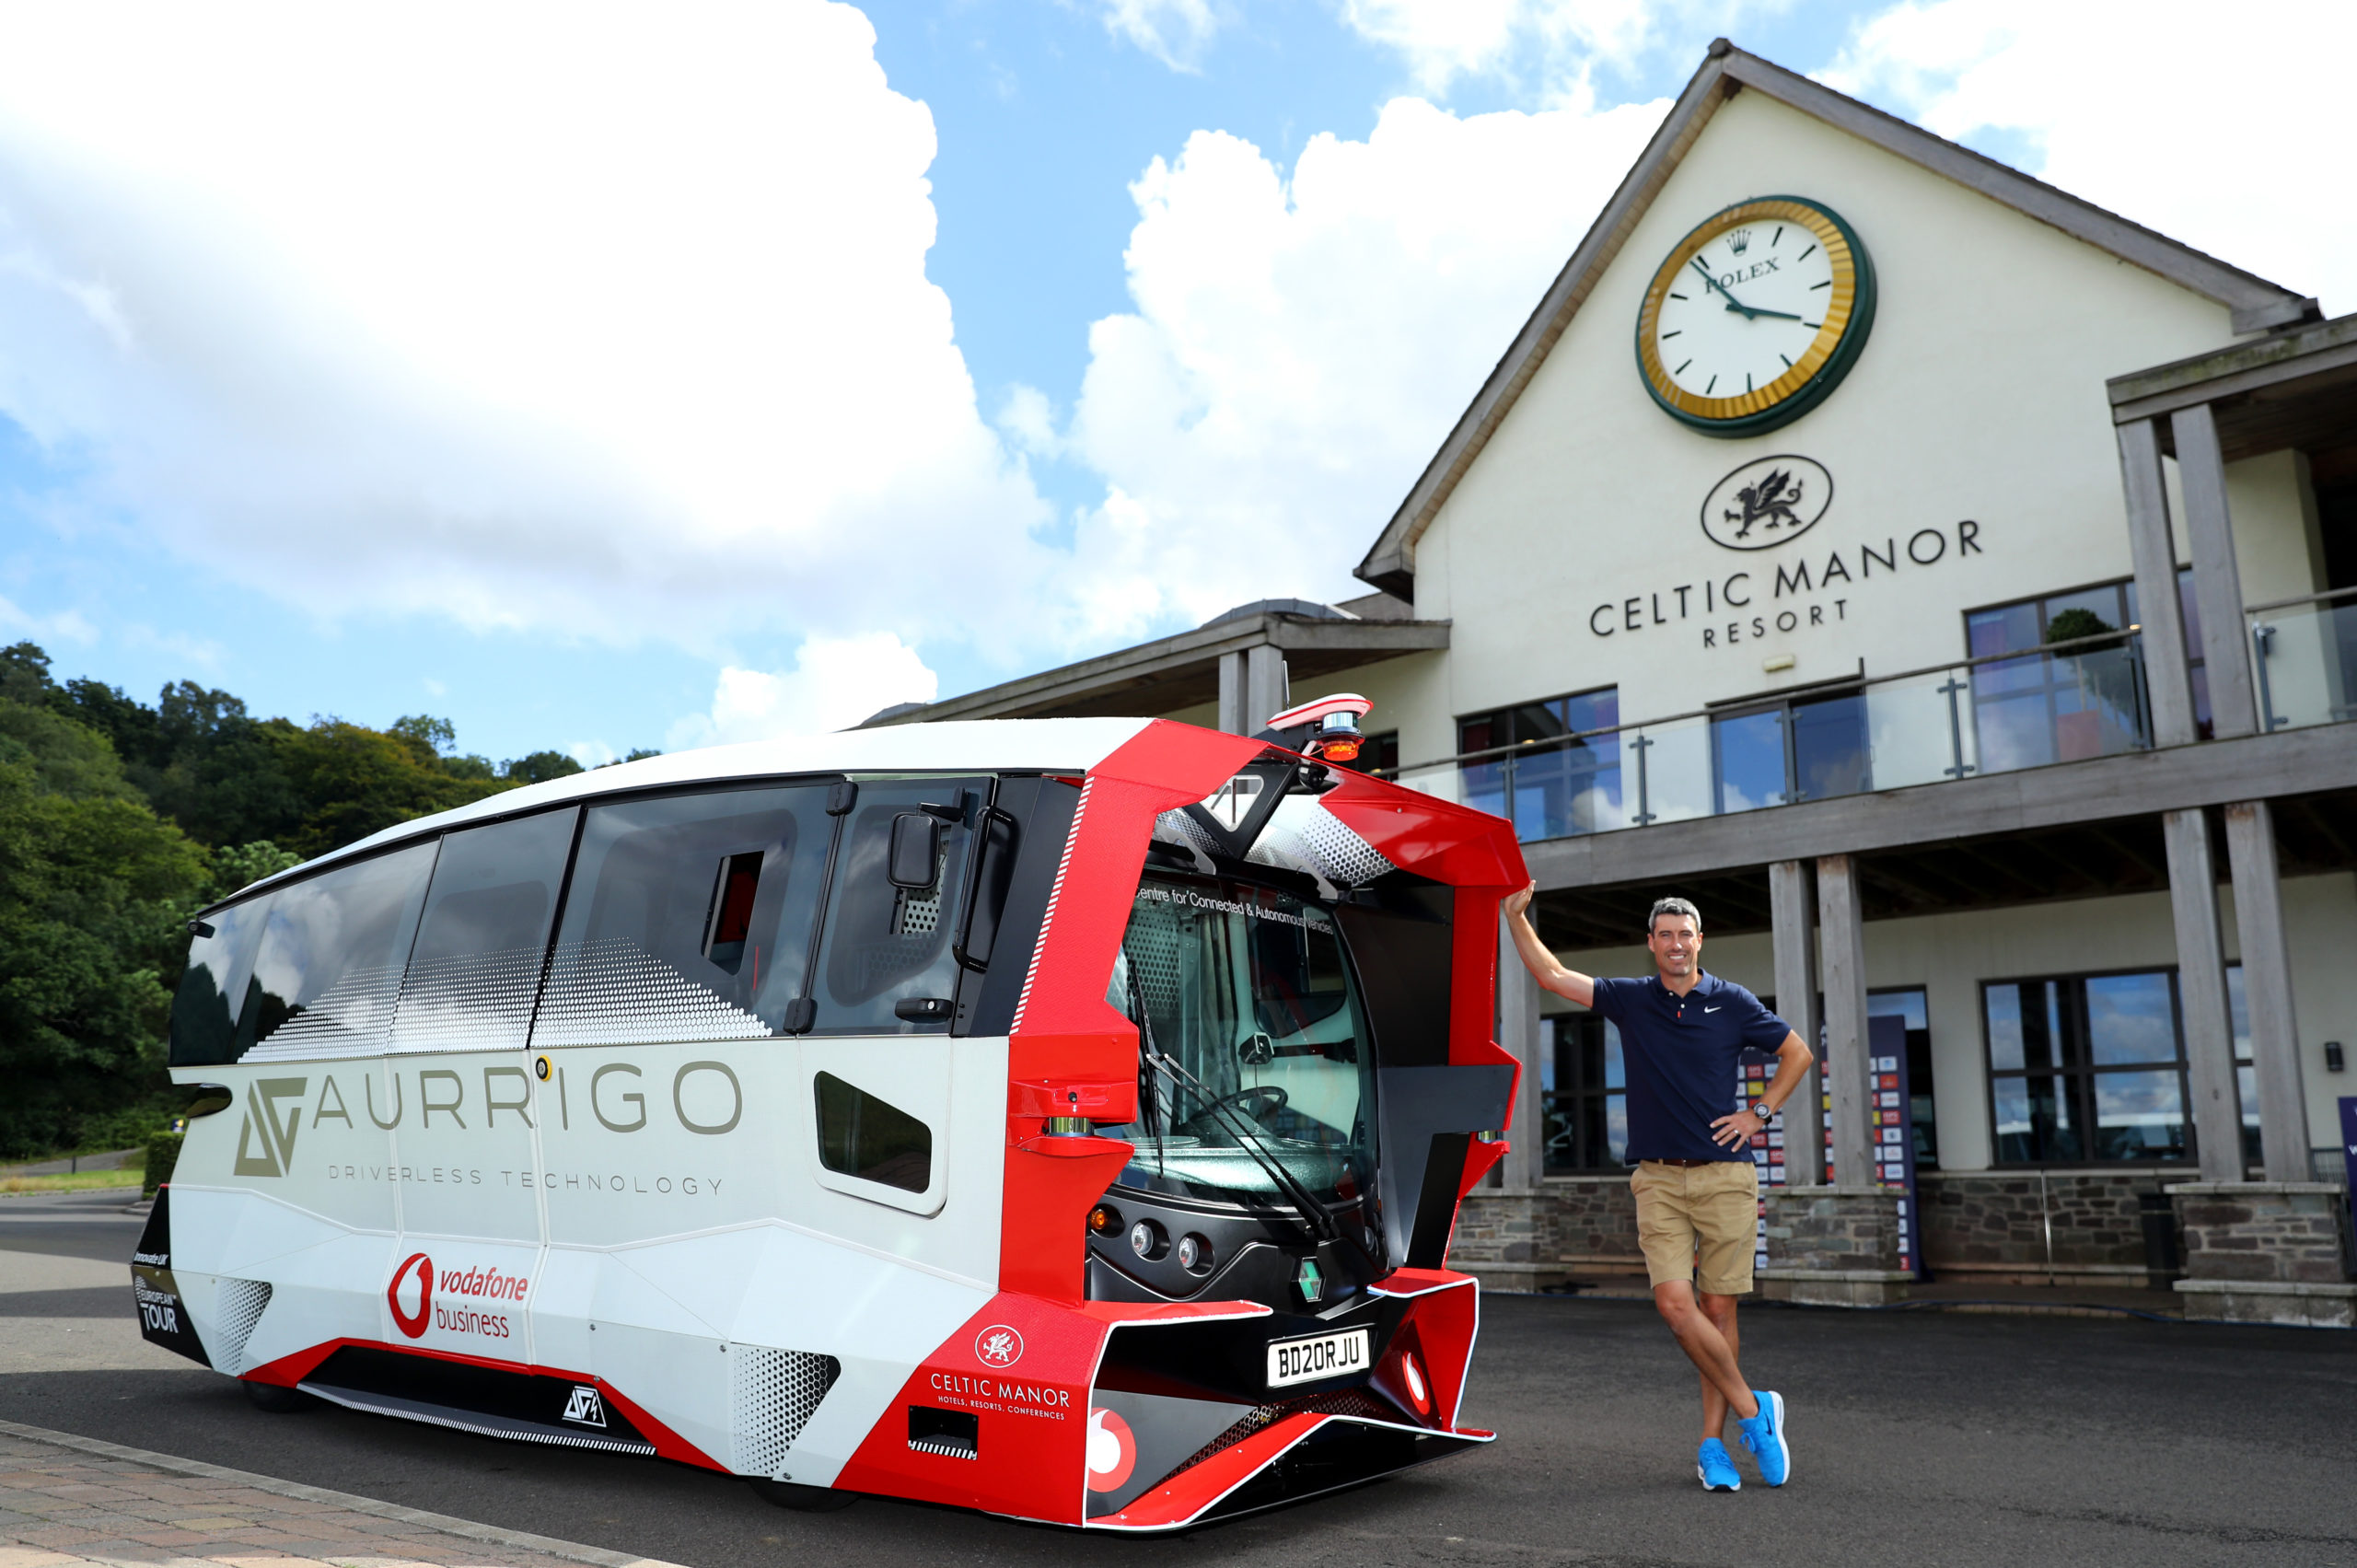 European Tour Pro Golfer Ross Fisher stands next to the Aurrigo x Vodafone Driverless Shuttle